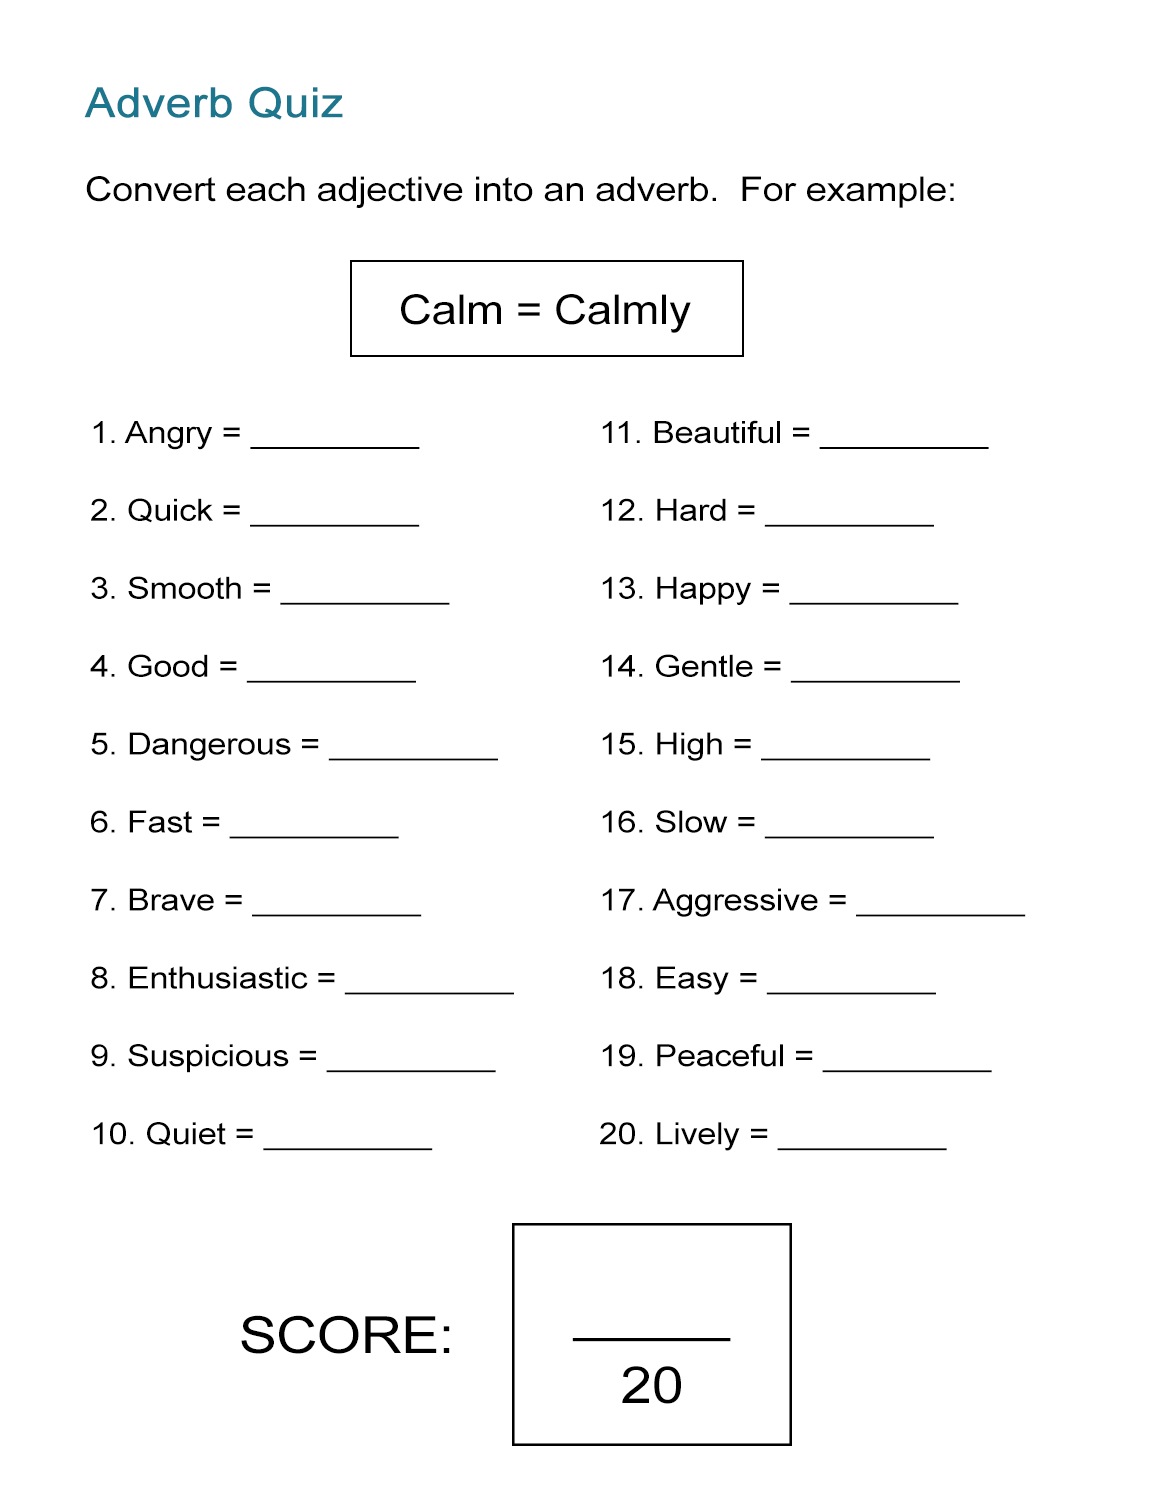 adjective-or-adverb-esl-printable-grammar-worksheets-for-kids-pdf-worksheets-engworksheets